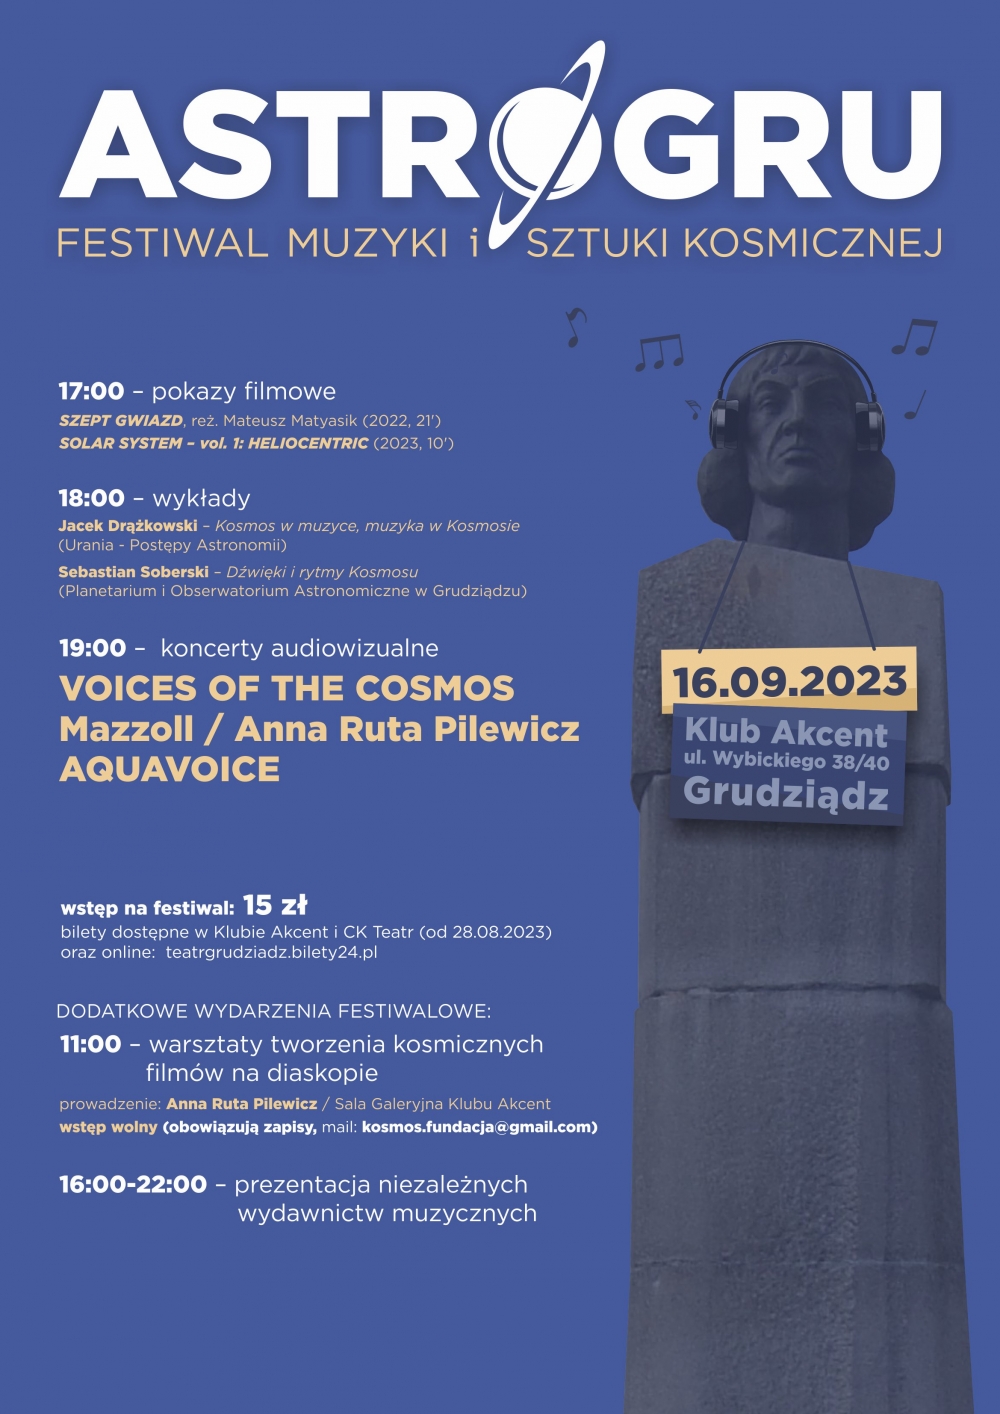 ASTRO - GRU-Festiwal Muzyczny